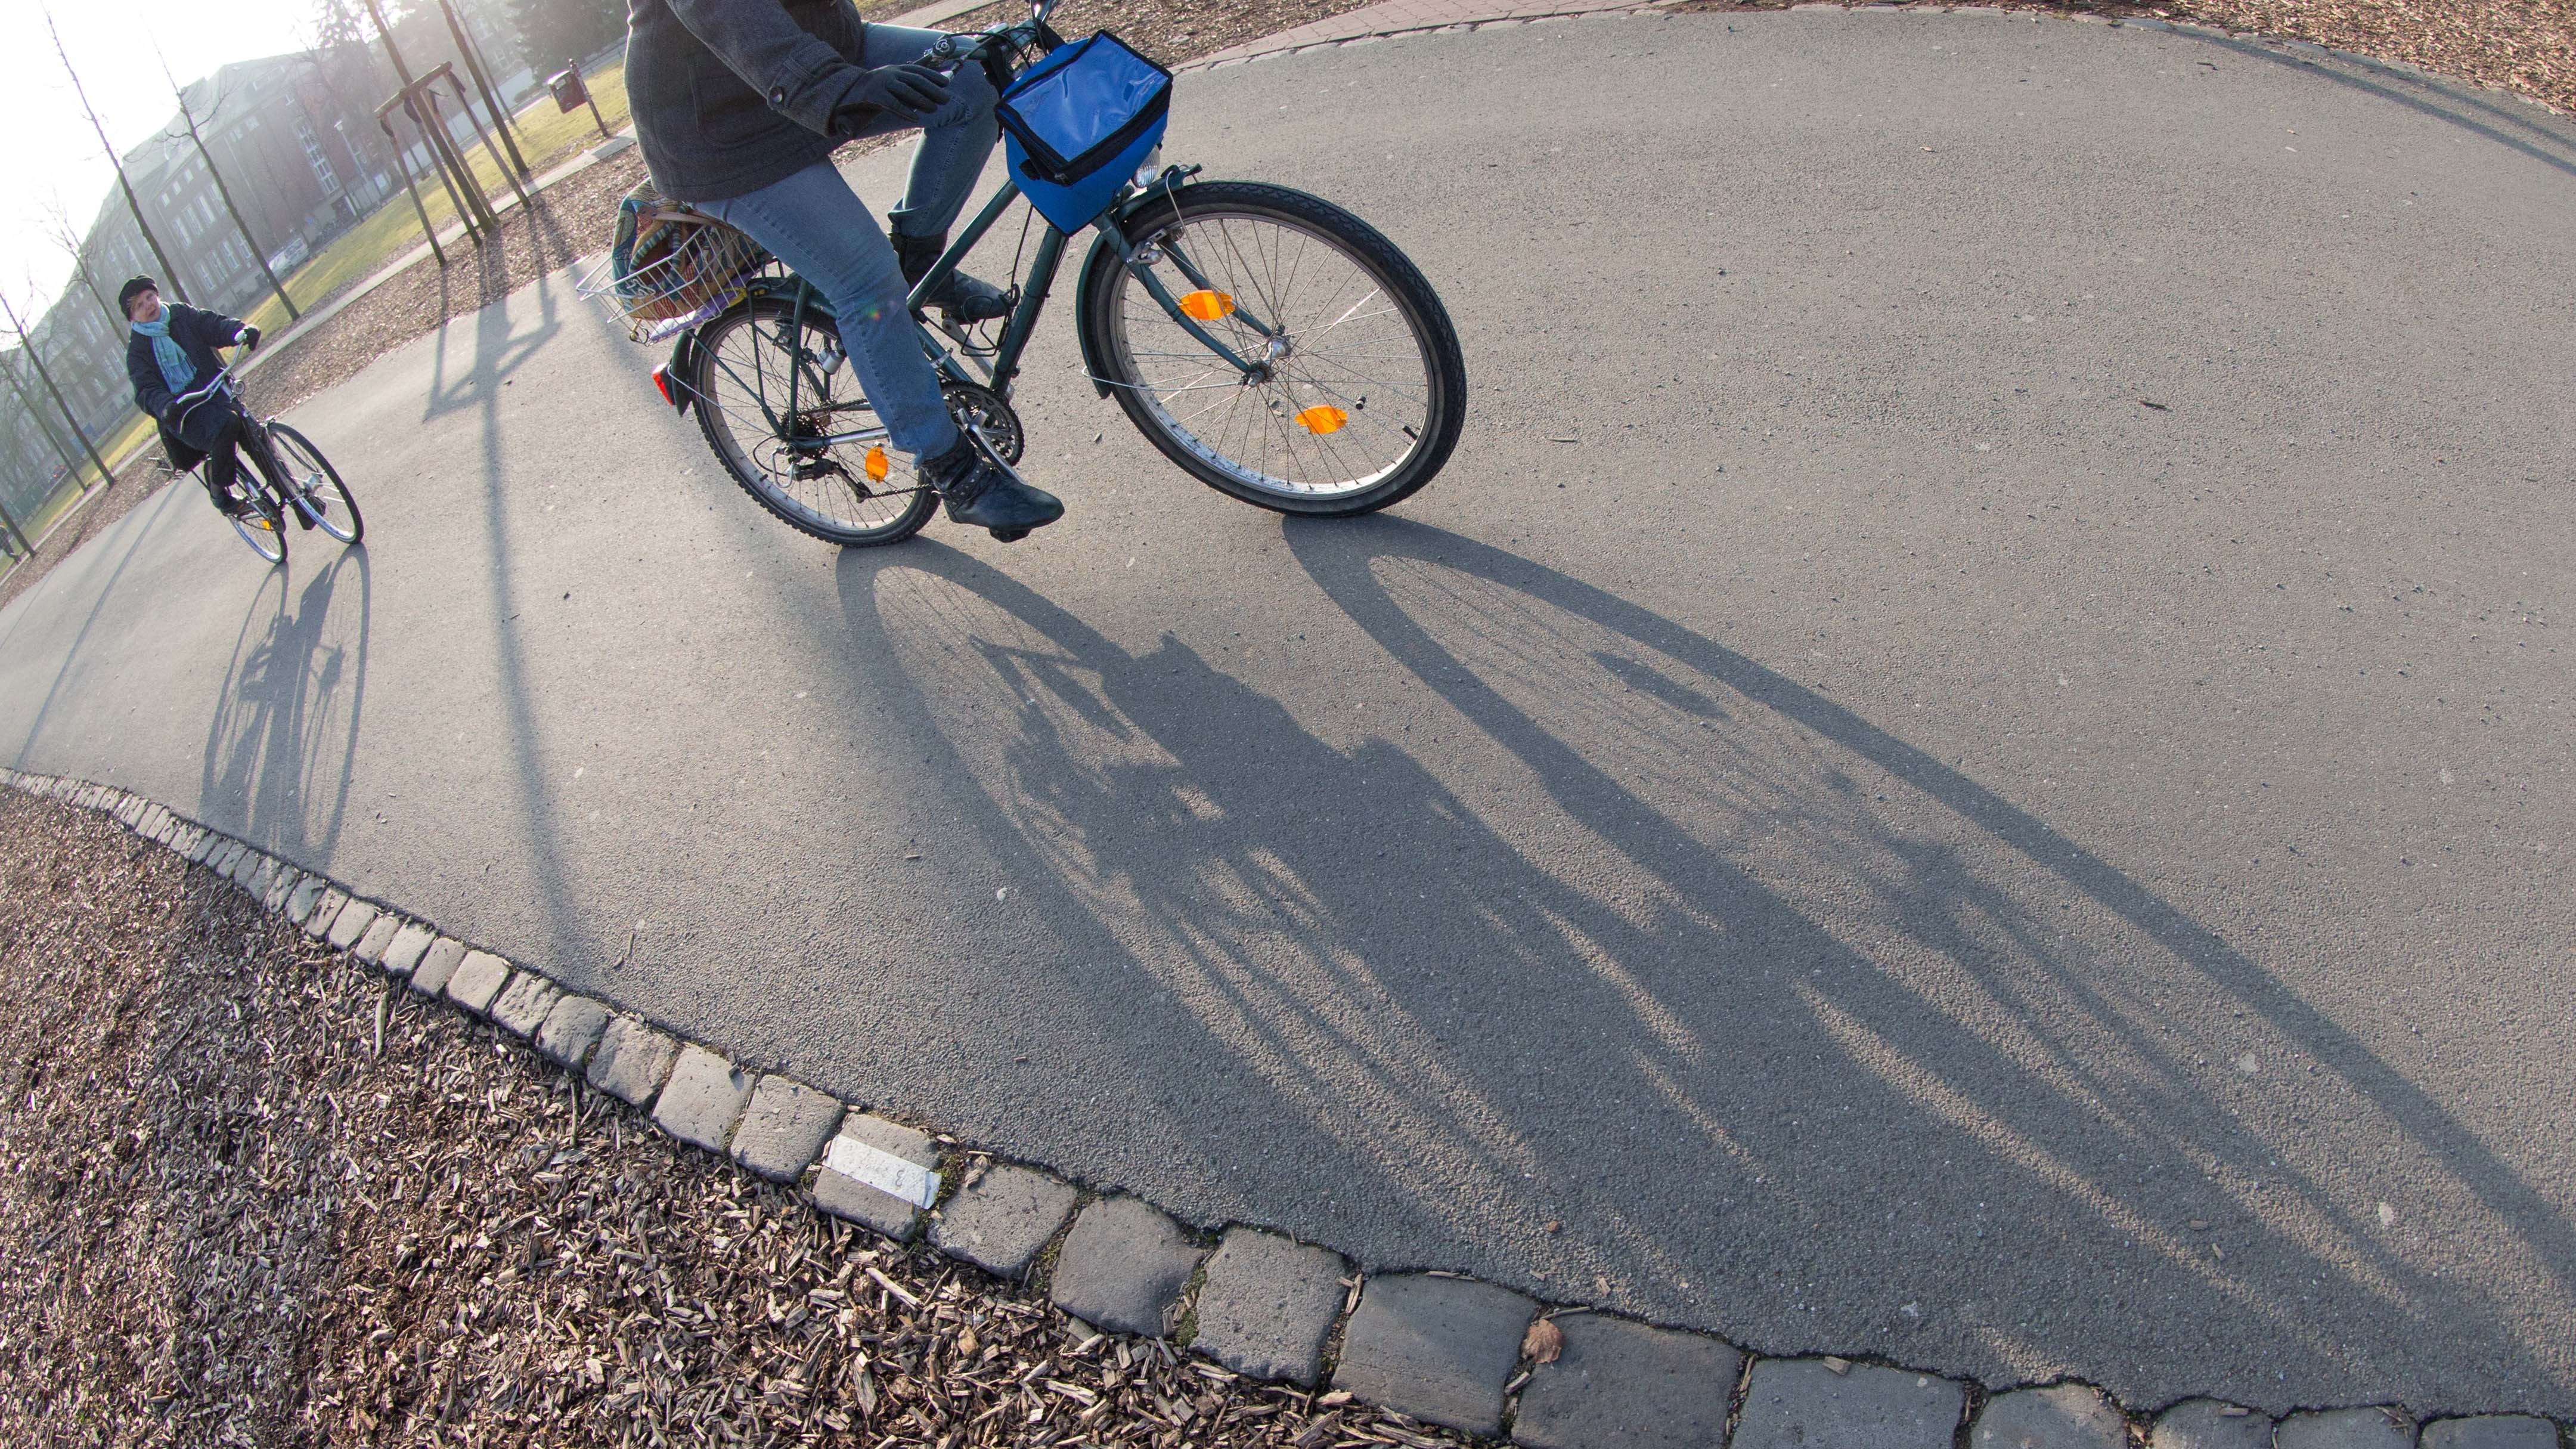 Gegenwartsgedränge (2/3) - Mit dem Fahrrad durch die Stadt - Phase Gelb:  heute